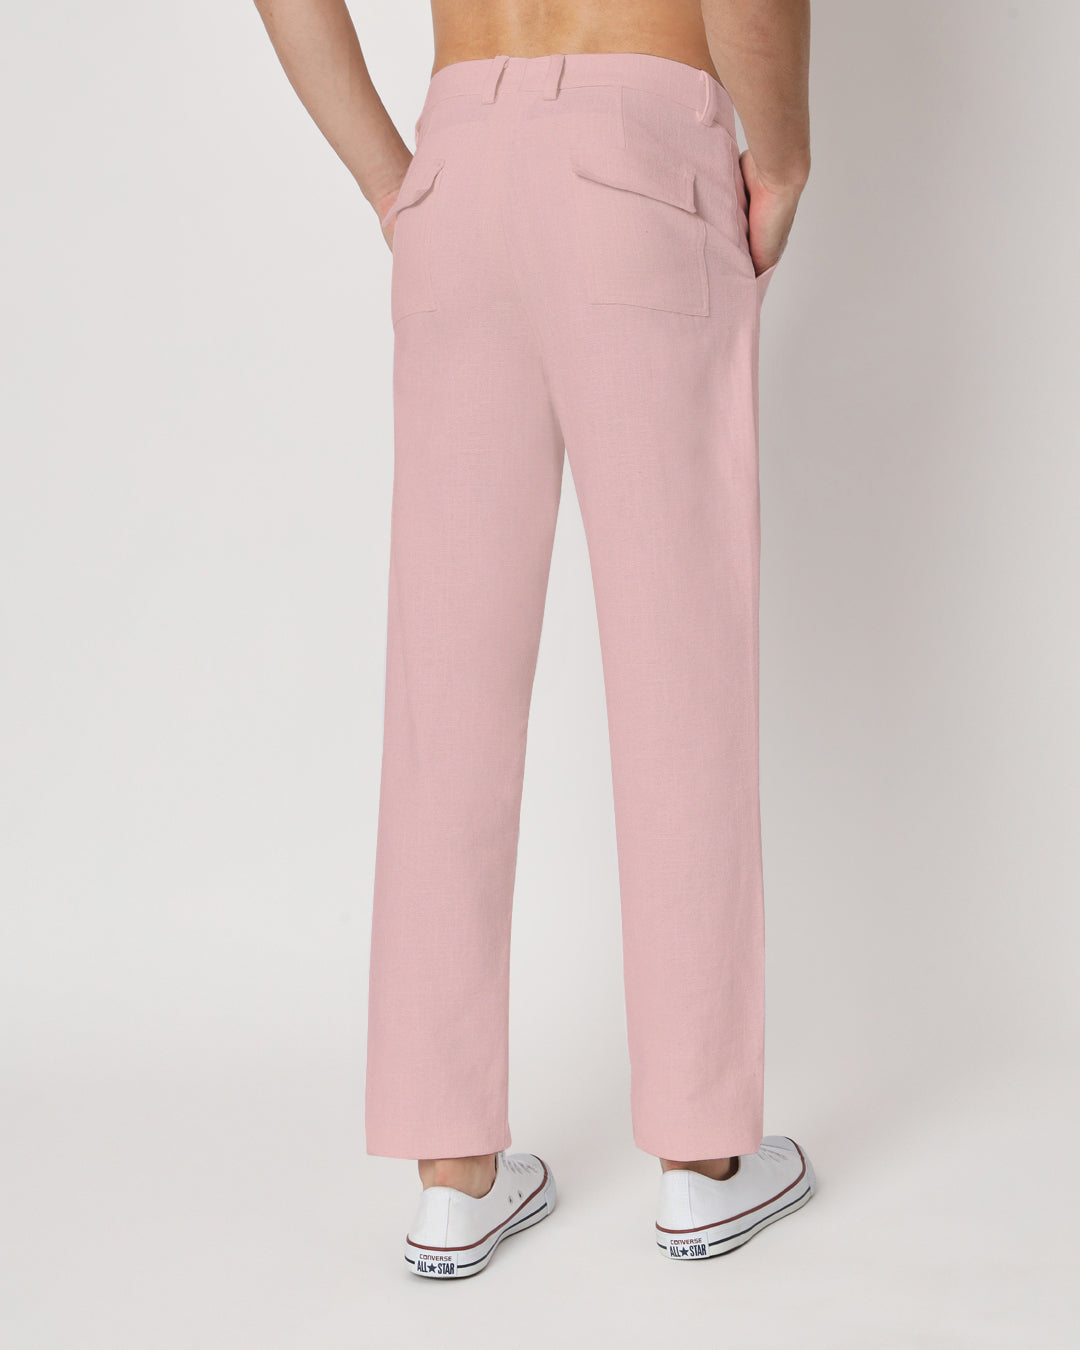 Comfy Ease Fondant Pink Men's Pants